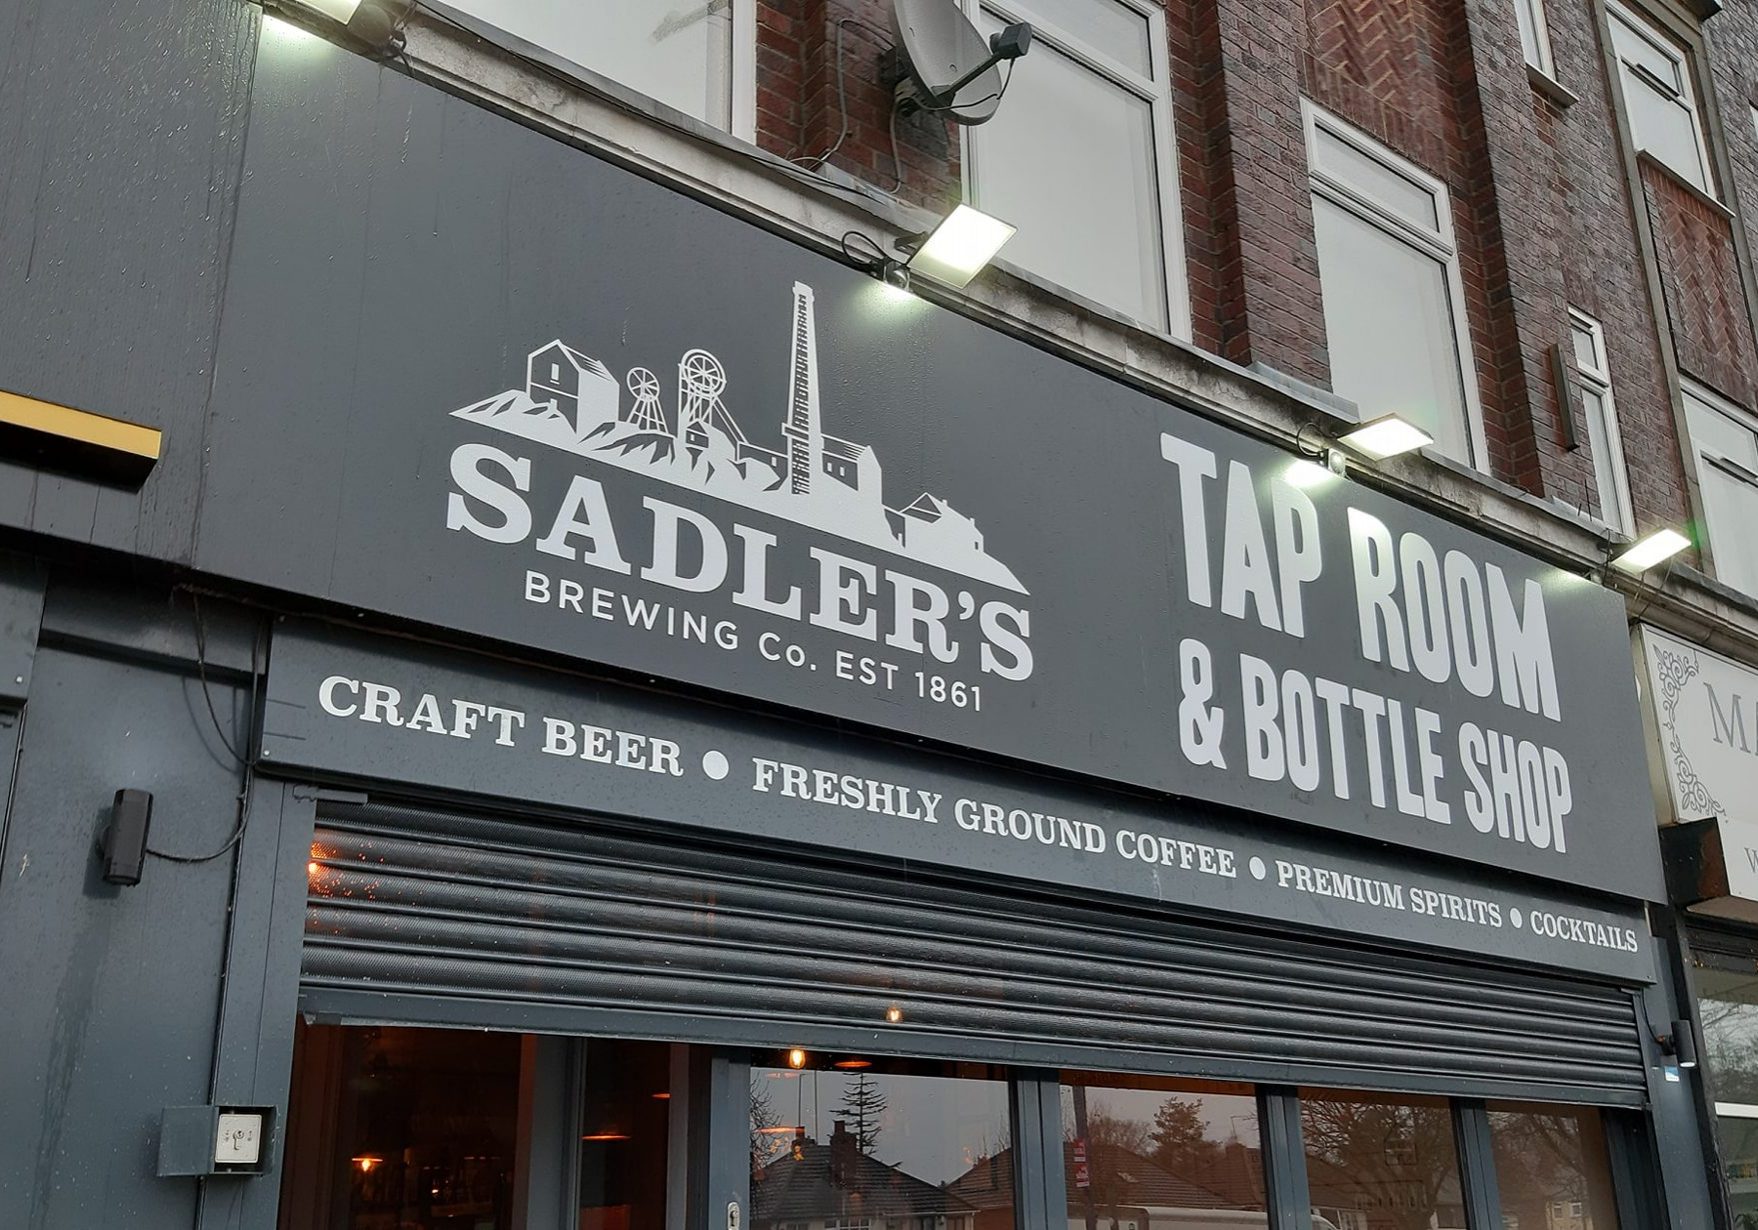 Sadlers Tap Room & Bottle Shop sign